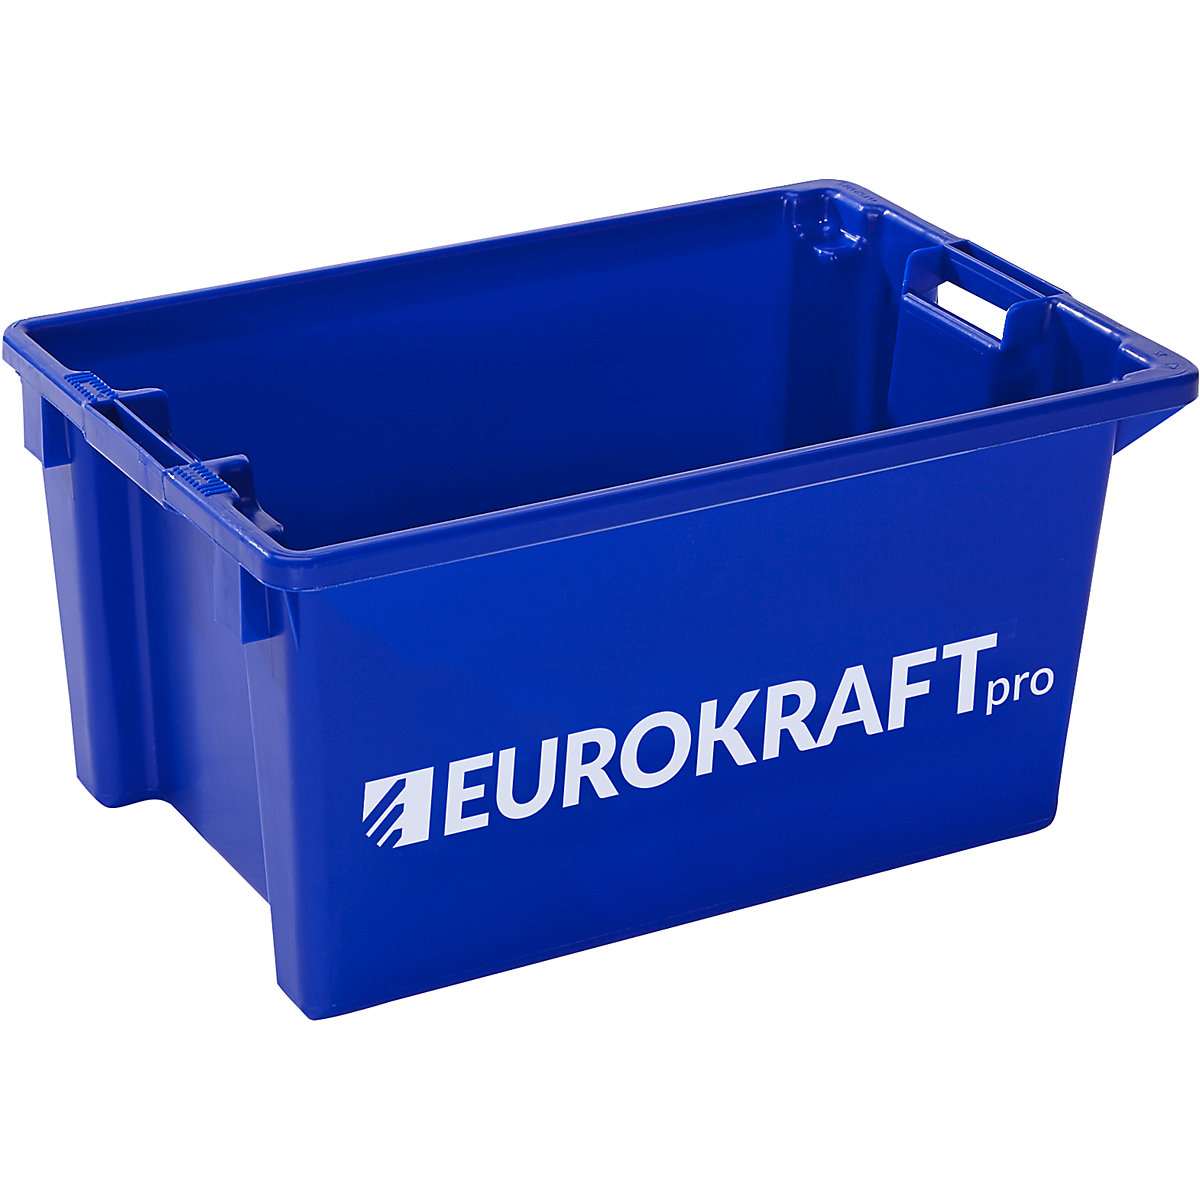 Okretni spremnik za slaganje – eurokraft pro, volumen 50 l, pak. 3 kom., u plavoj boji